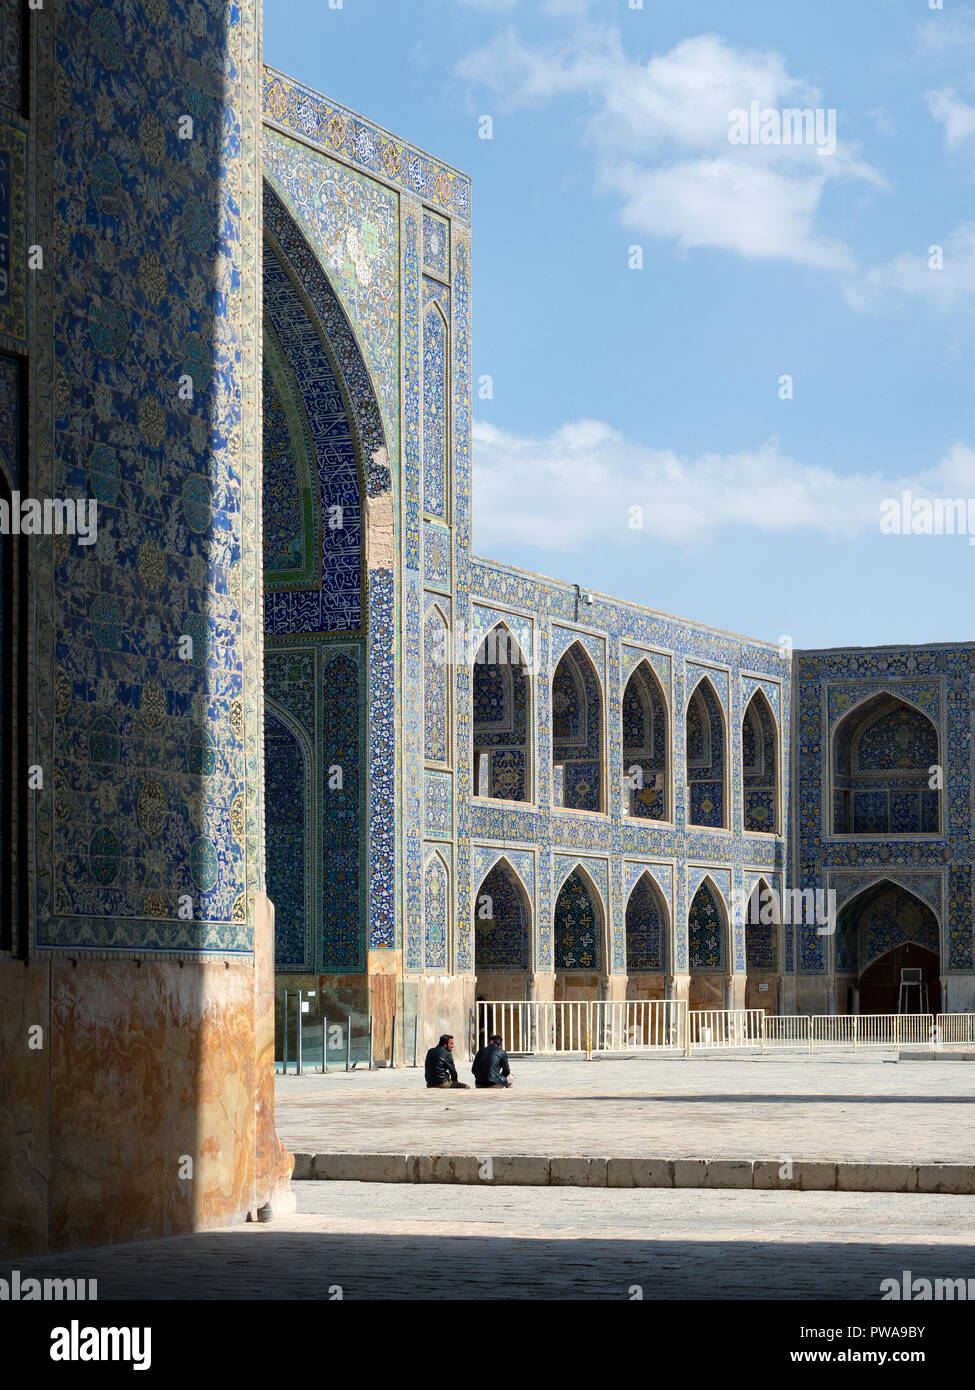 Isfahan, Iran - Marzo 3, 2017 : due uomini seduti nel cortile della Moschea Shah, noto anche come Imam moschea. Si tratta di un patrimonio mondiale dell UNESCO Foto Stock